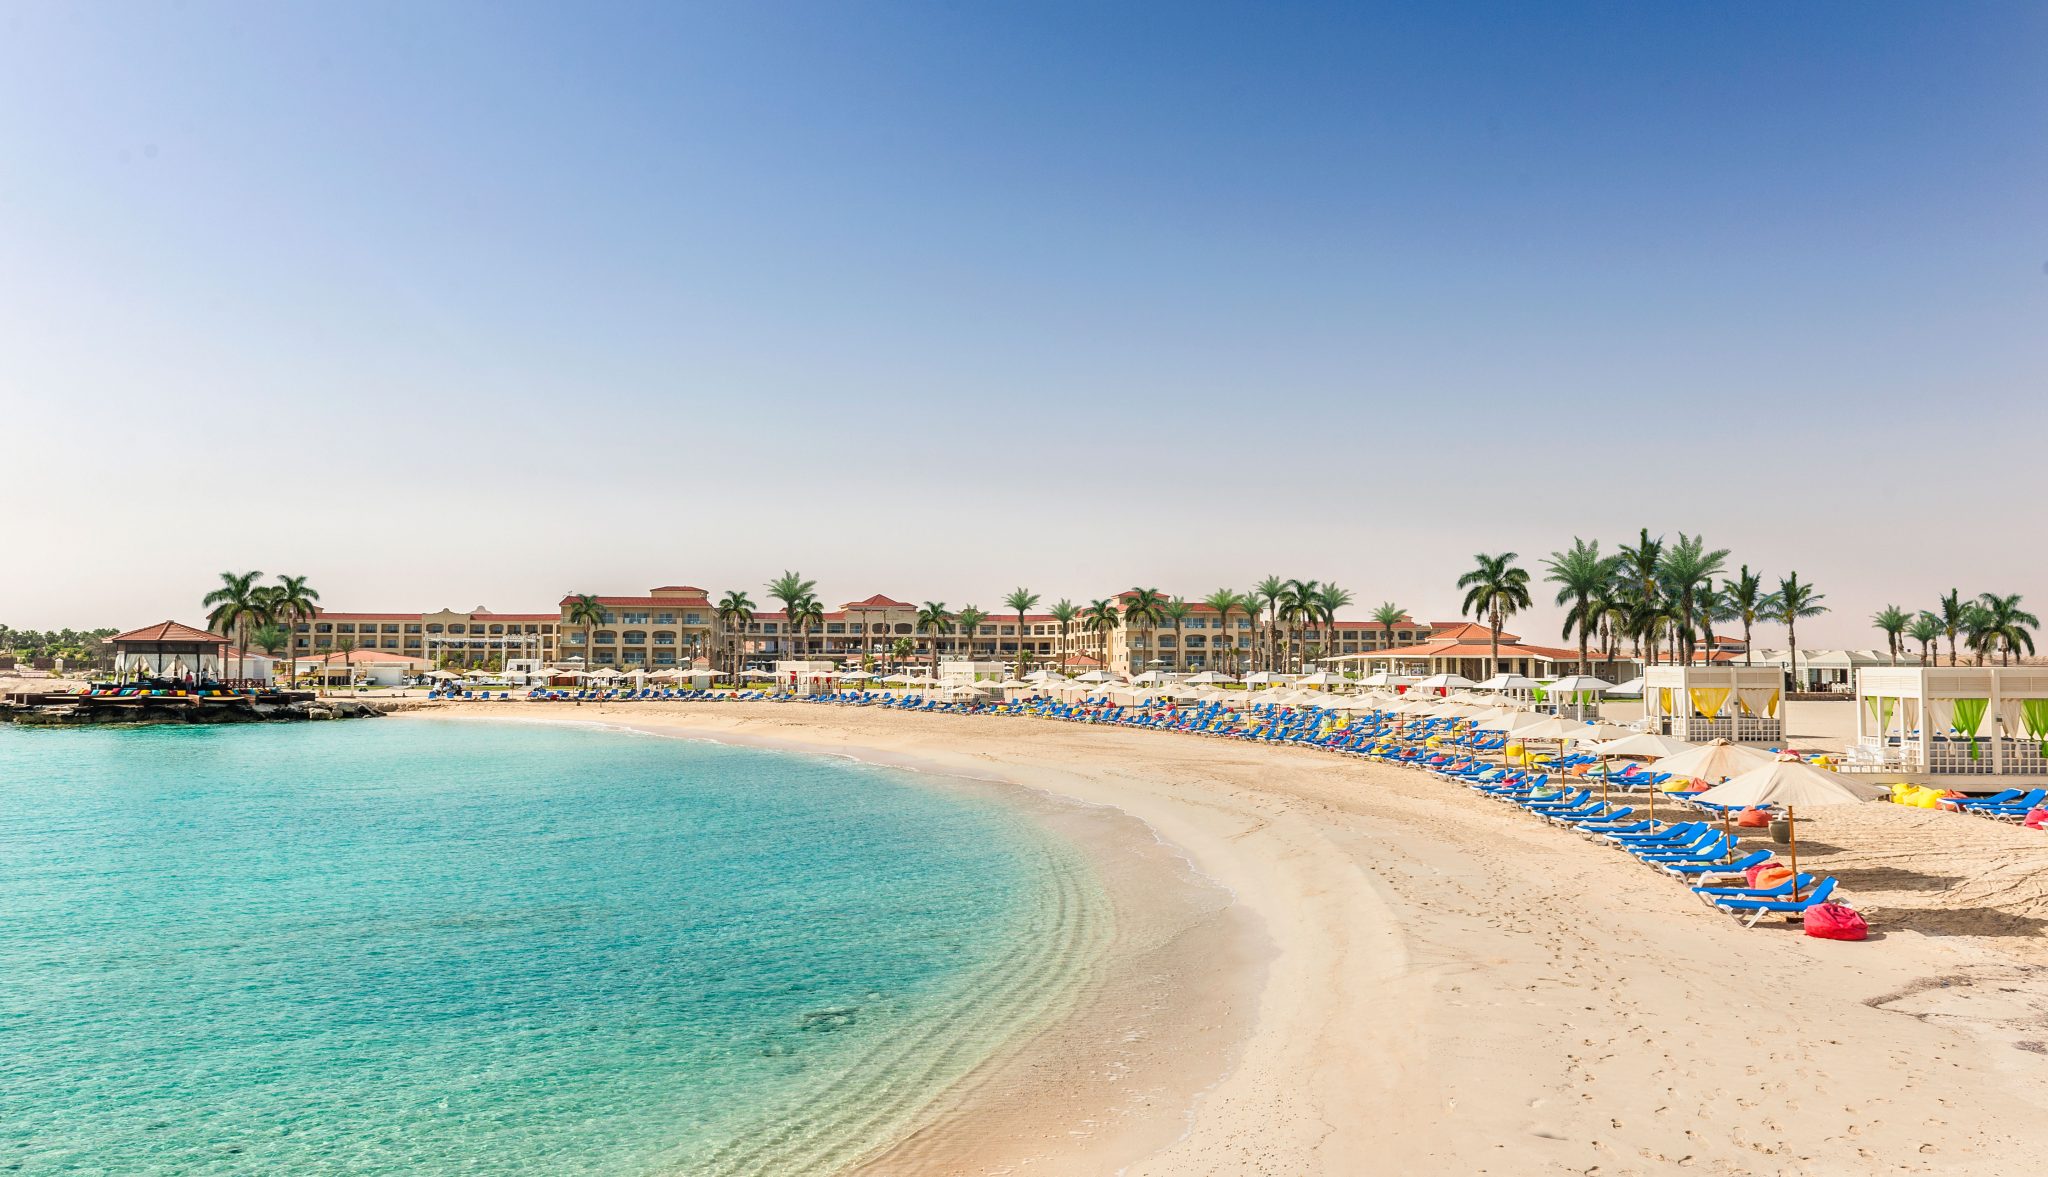 مجموعة فنادق ومنتجعات ريكسوس تستعد لإعادة إفتتاح فنادقها في مصر